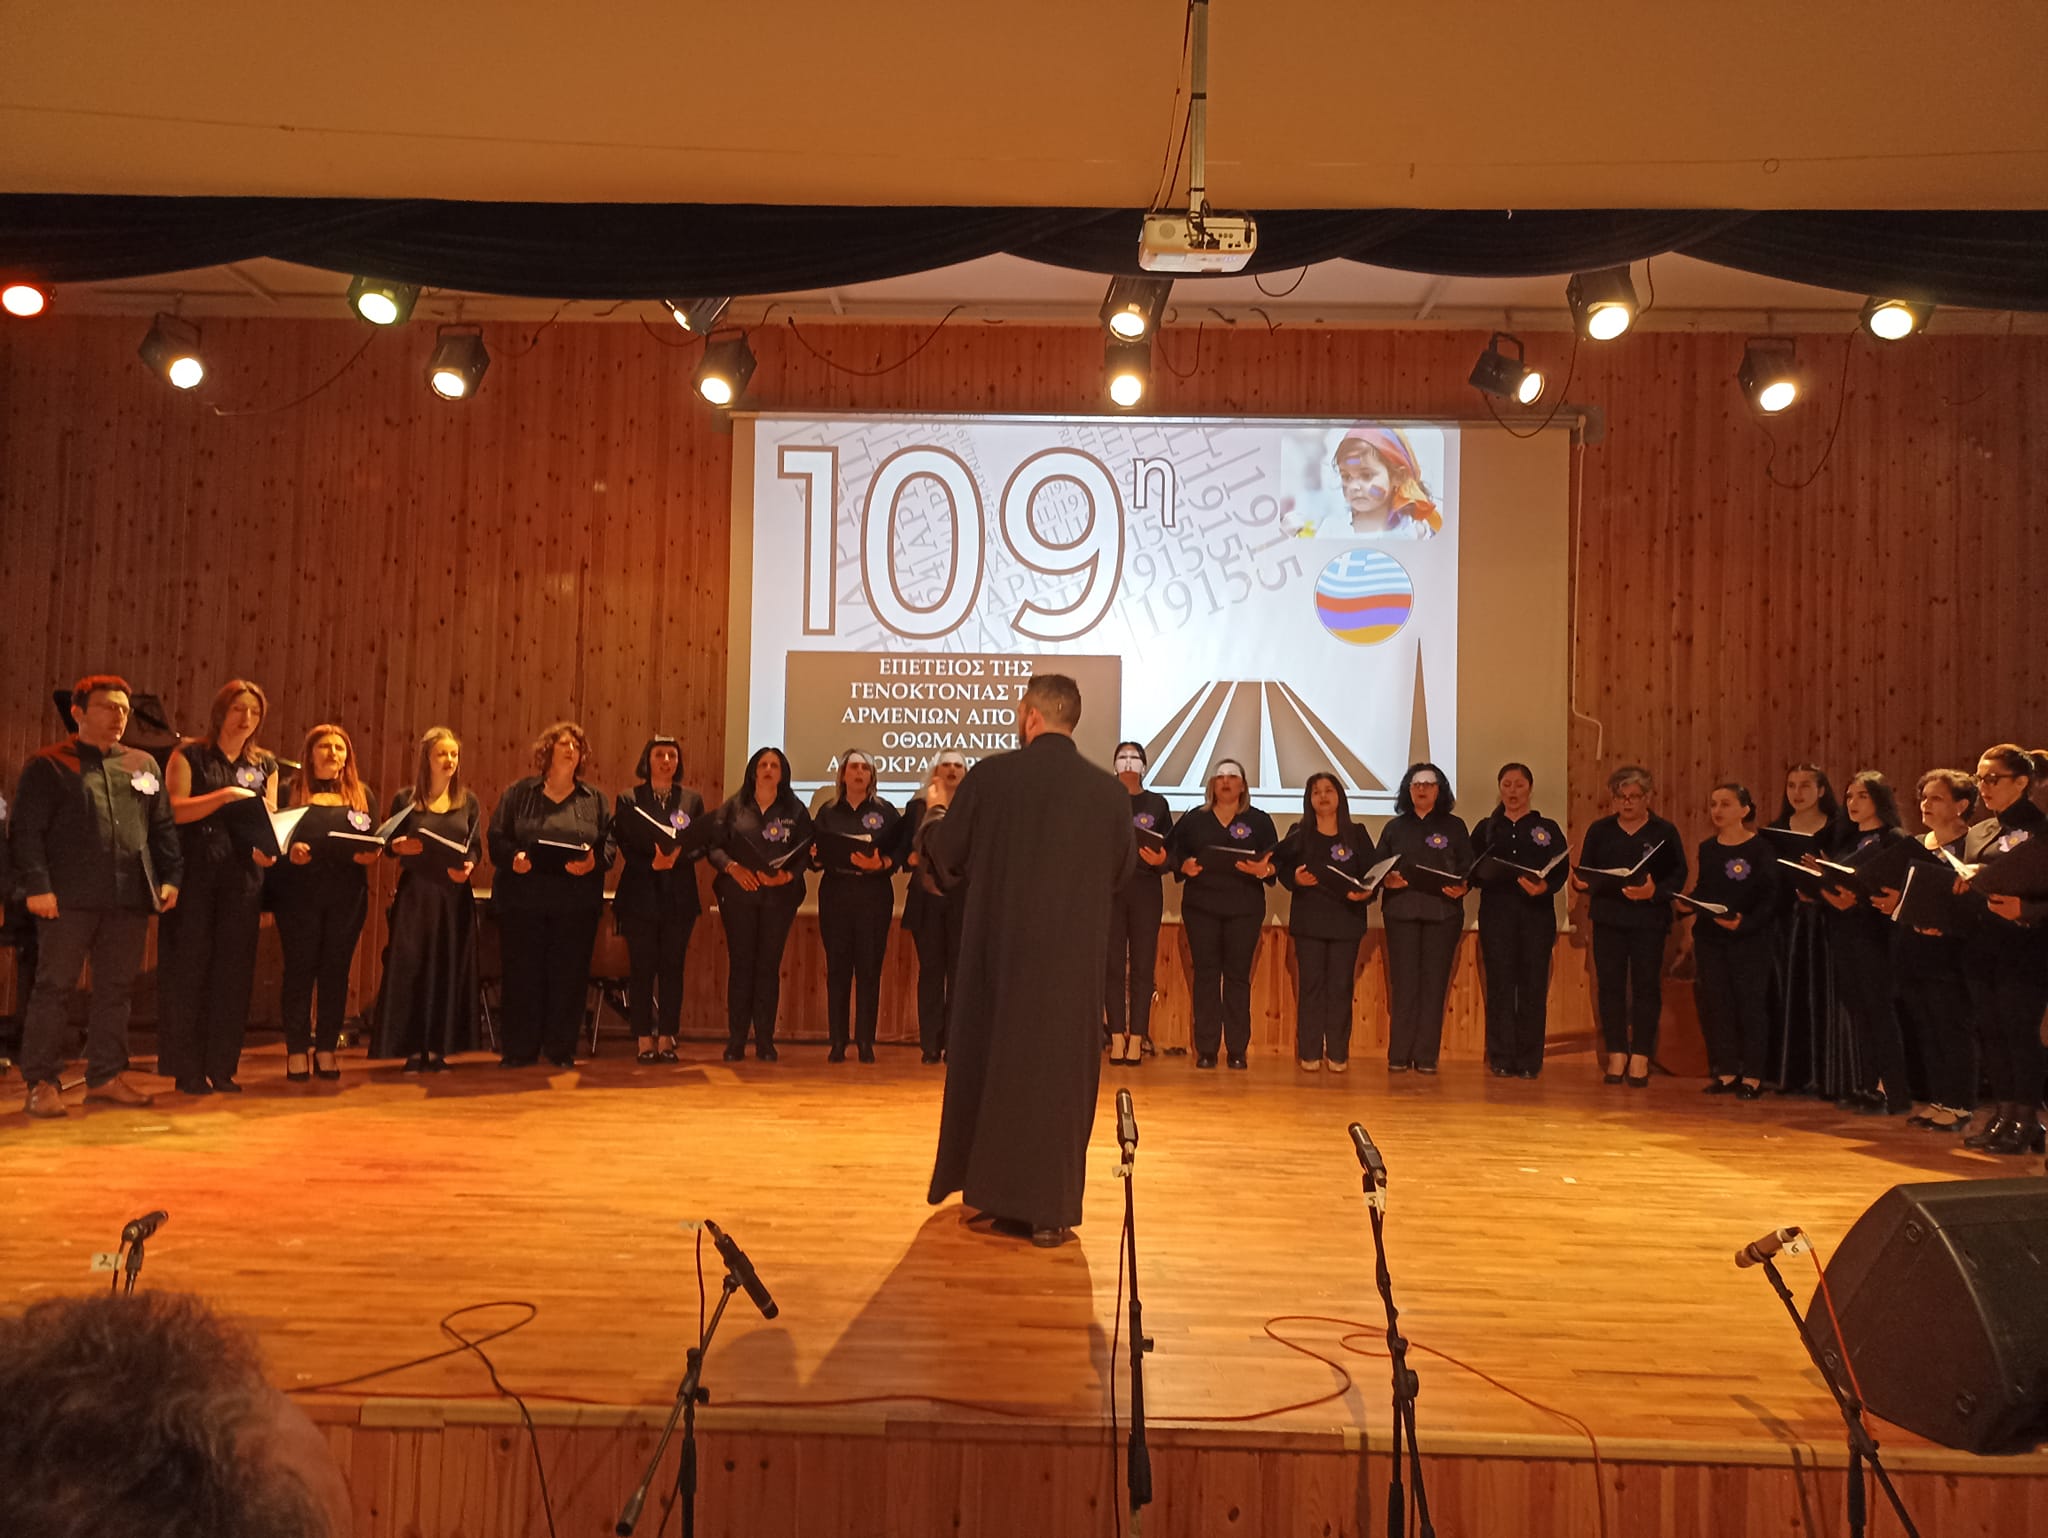 Հունաստանի Կոմոտինի քաղաքի երաժշտական ​​դպրոցի դահլիճում կայացել է Հայոց ցեղասպանության 109-րդ տարելիցի ոգեկոչման միջոցառում